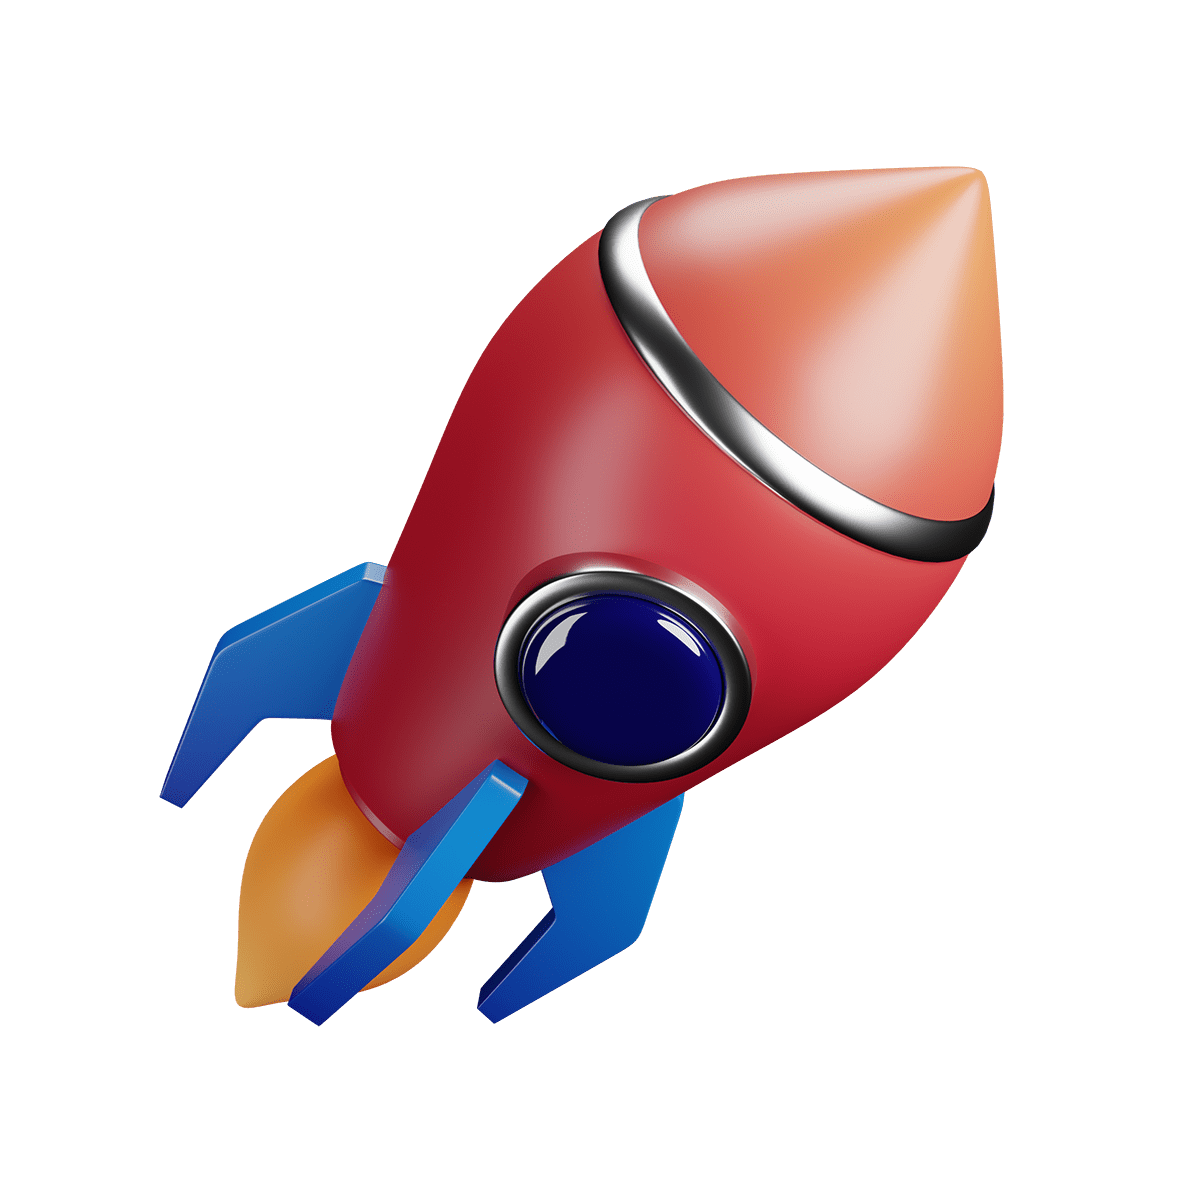 rocket-icon